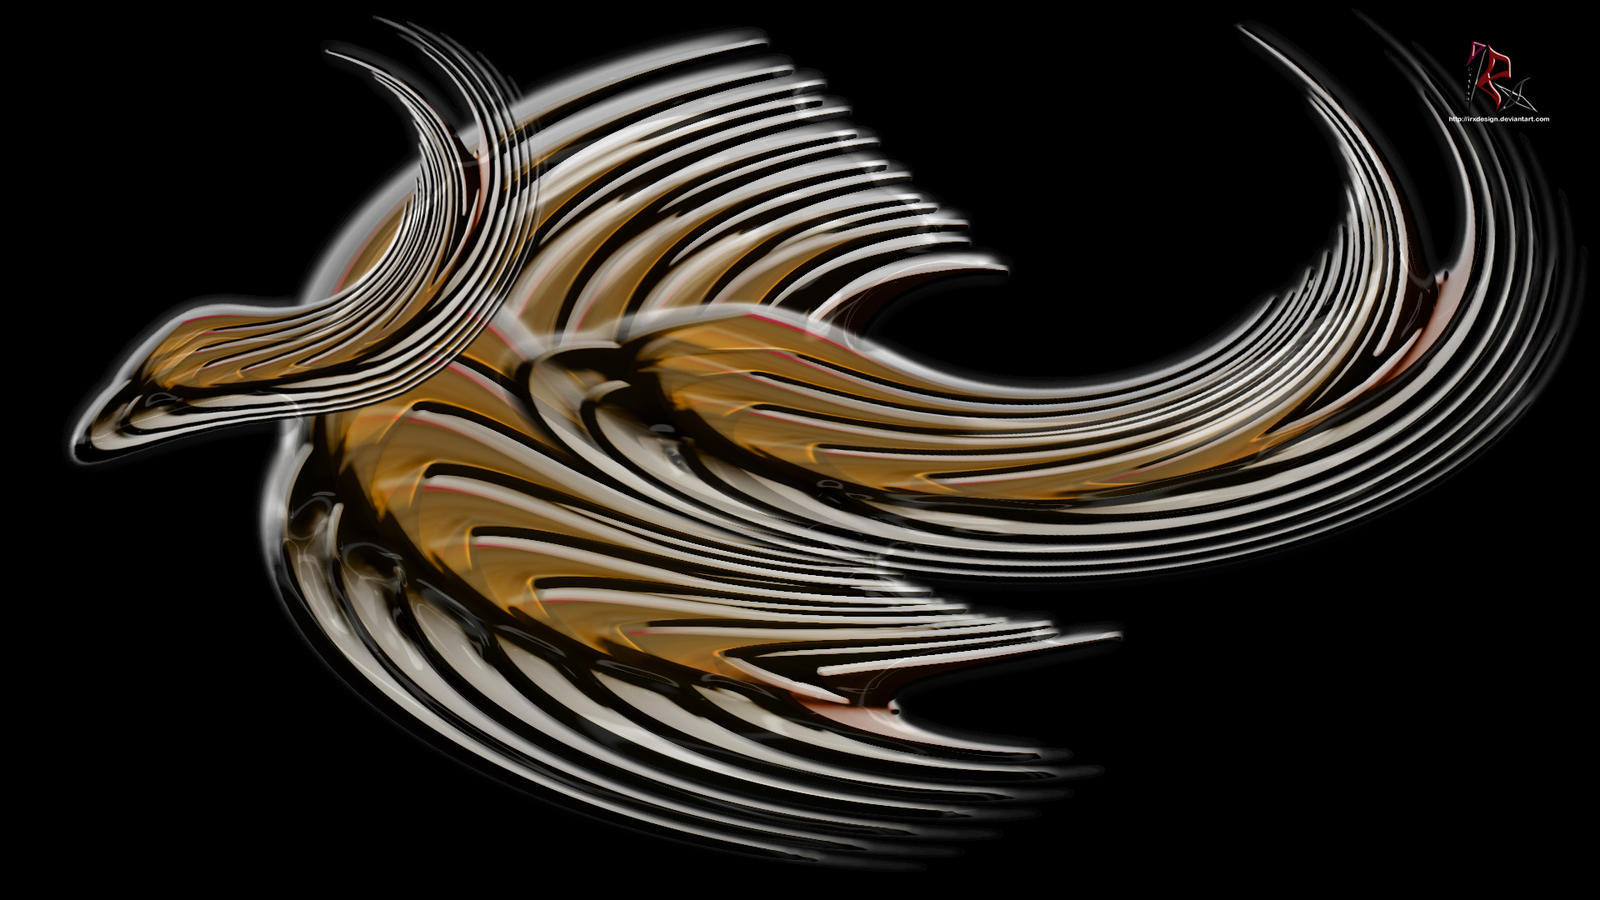 Bronze Bird Batik Art By IRXDESIGN On DeviantArt